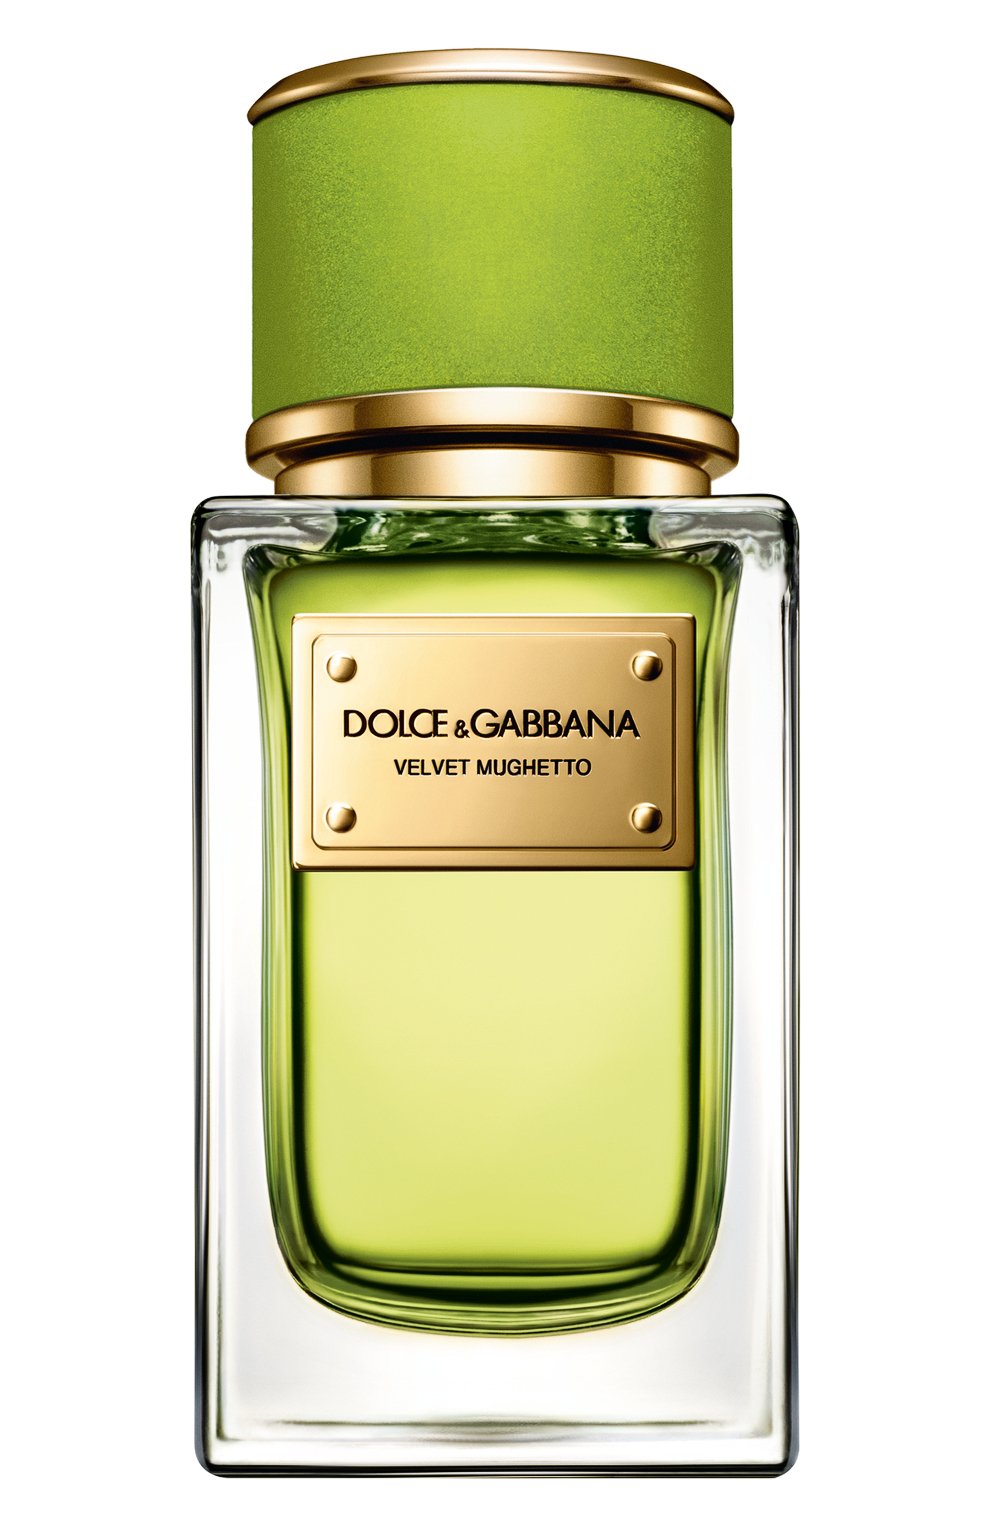 Velvet Mughetto Dolce&Gabbana perfume - a new fragrance for women and ...